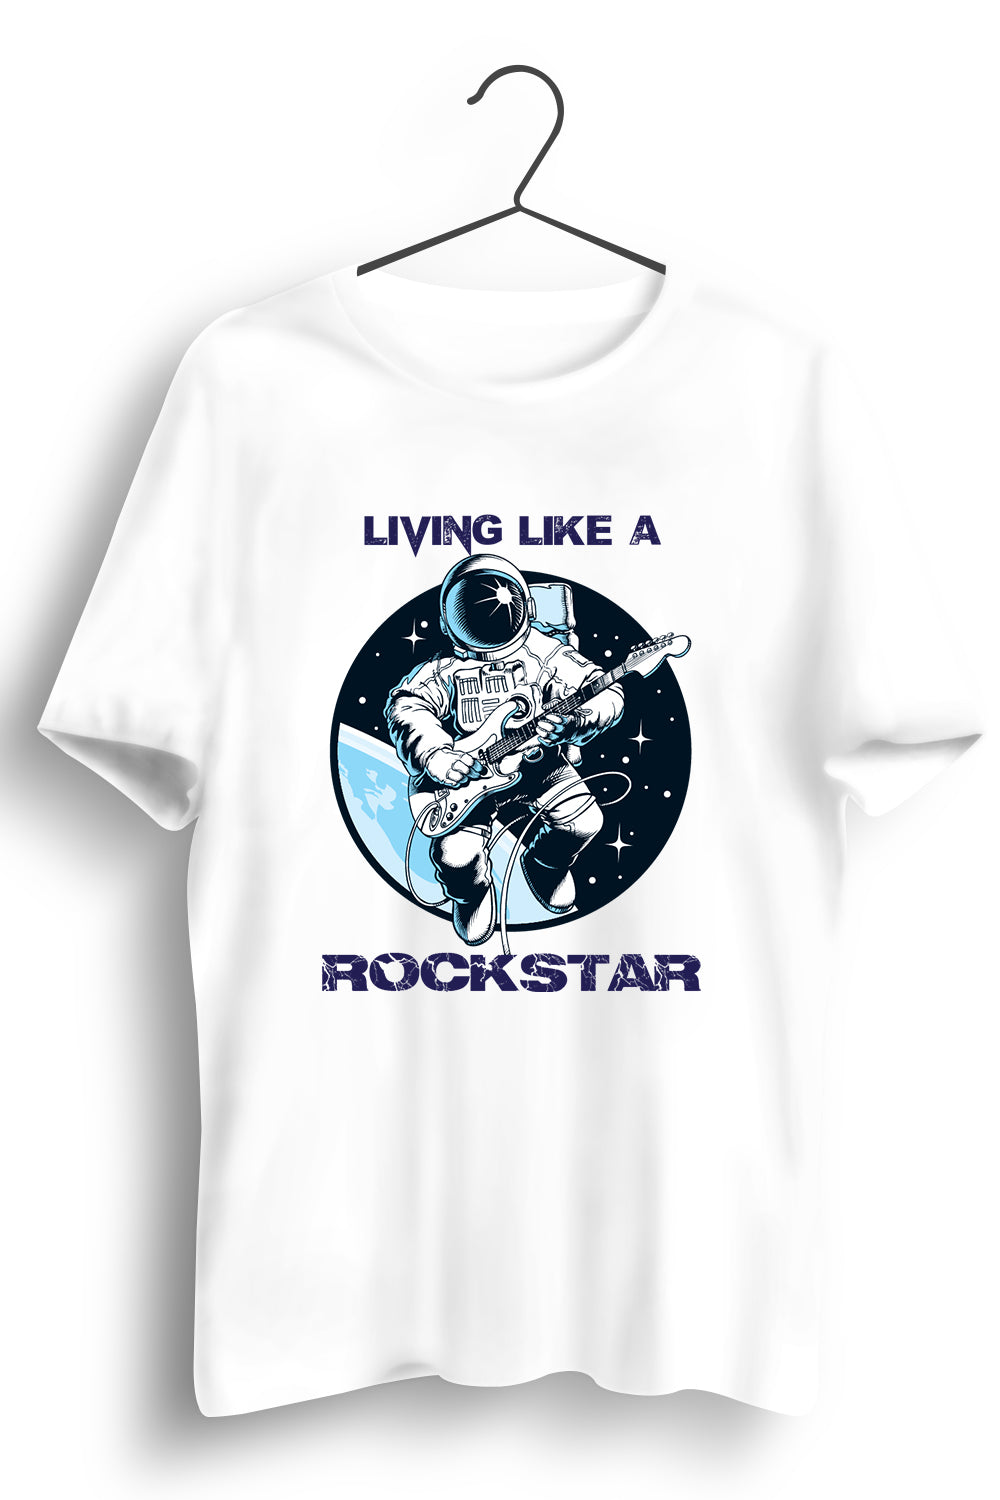 Living Like a Rockstar Graphic Printed White Tshirt